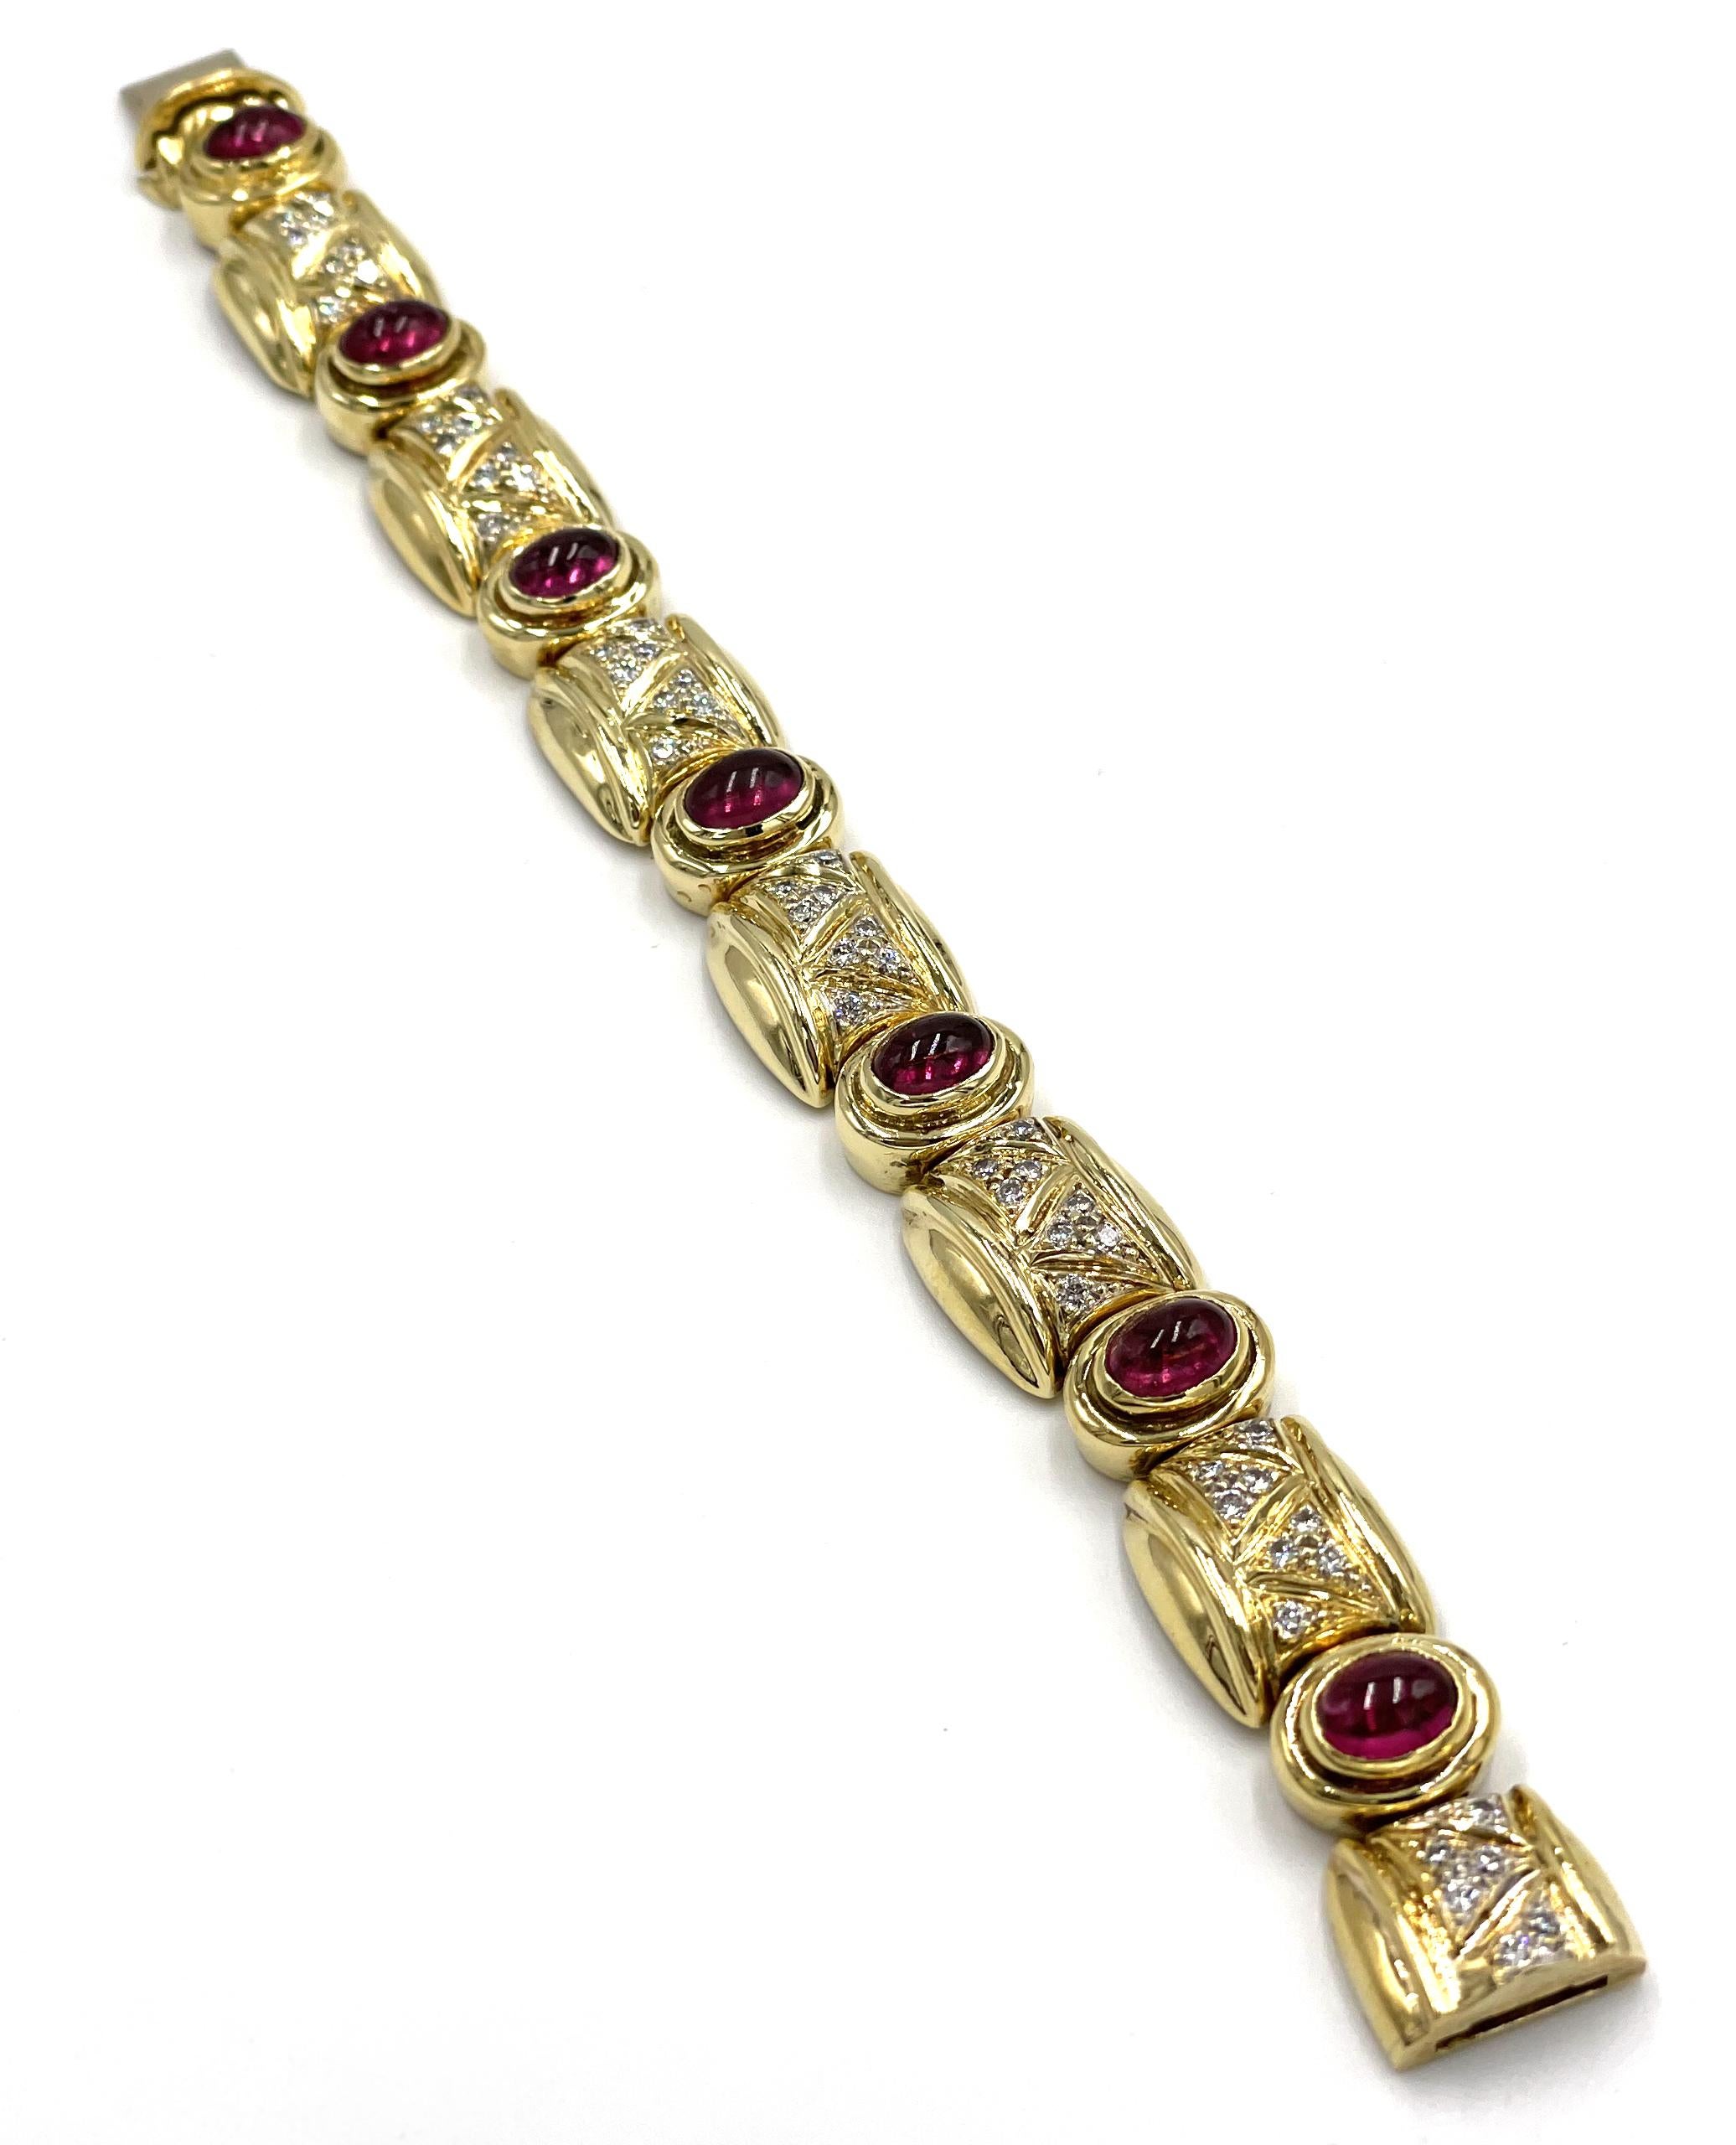 Armband aus 18 Karat Gelbgold mit 55 runden Diamanten von insgesamt 1,52 Karat (Farbe G, Reinheit VS) und 7 ovalen rosafarbenen Turmalinen im Cabochon-Schliff von jeweils 5 x 7 Millimetern. Die Länge des Armbands beträgt ca. 6,5 Zoll und die Breite